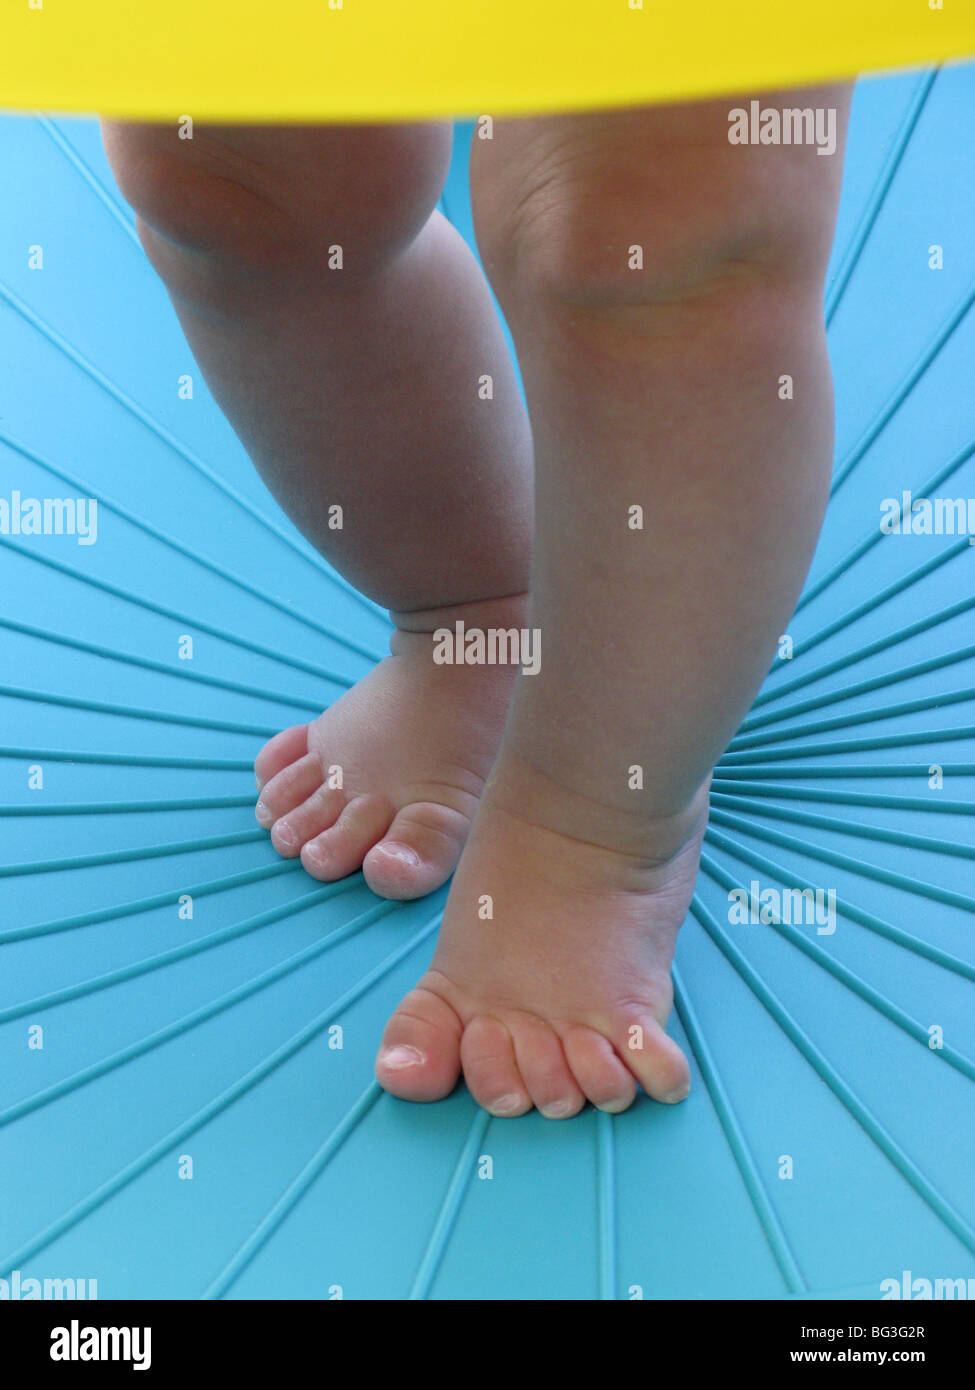 Les jambes et les pieds d'un enfant l'apprentissage de la marche dans un environnement bleu Banque D'Images